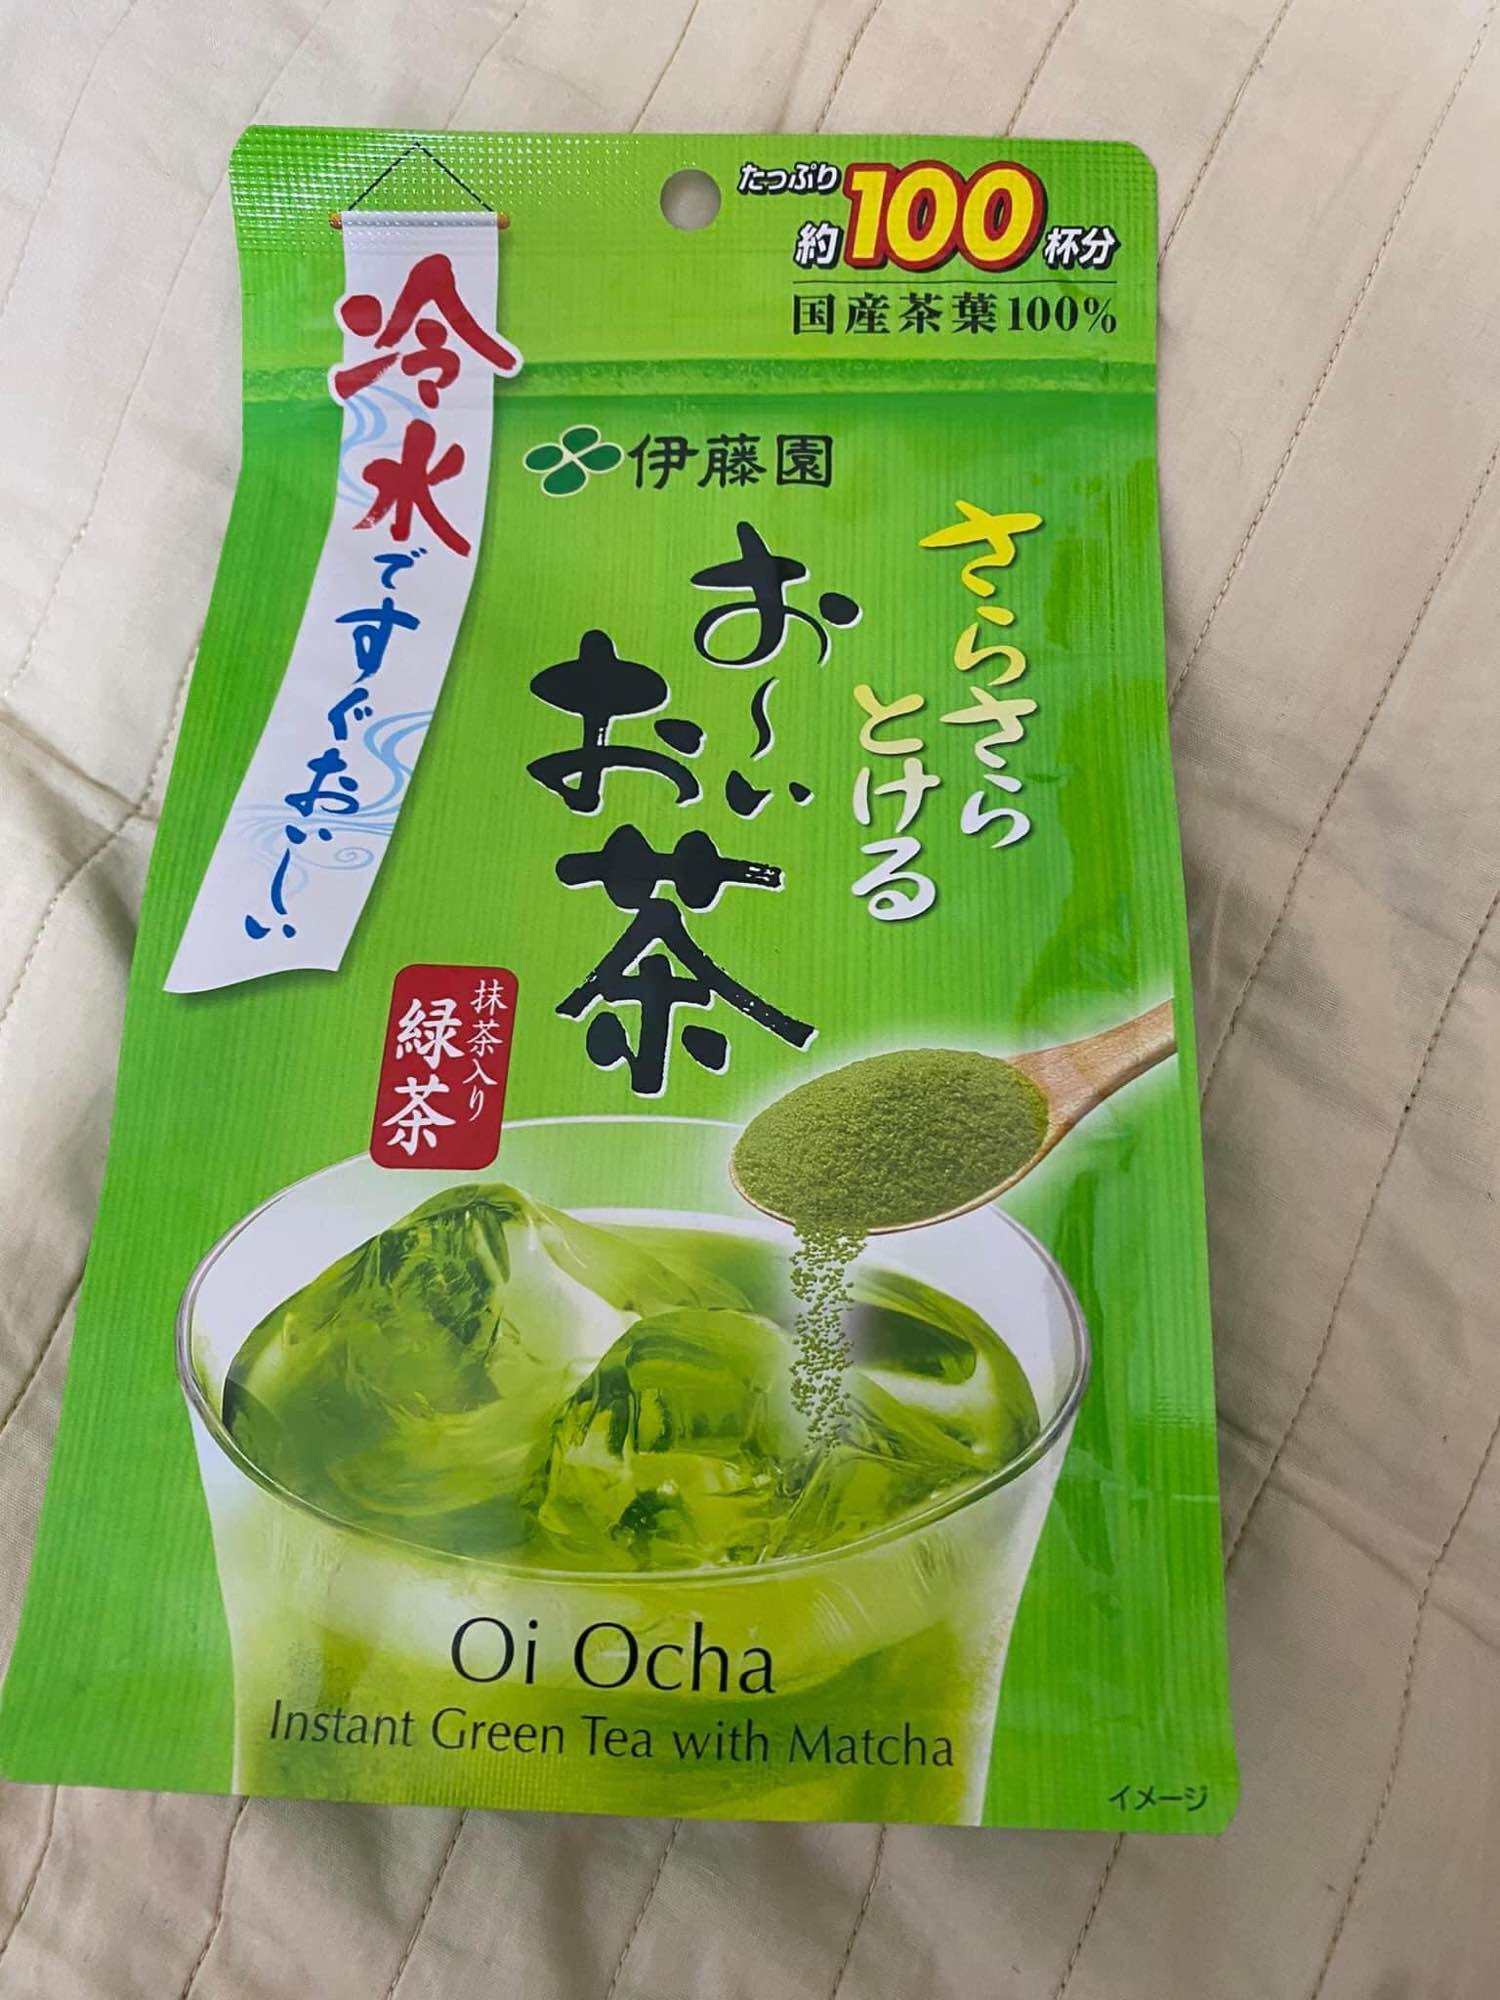 Bột trà xanh Matcha nguyên chất OI OCHA Nhật Bản 100gr